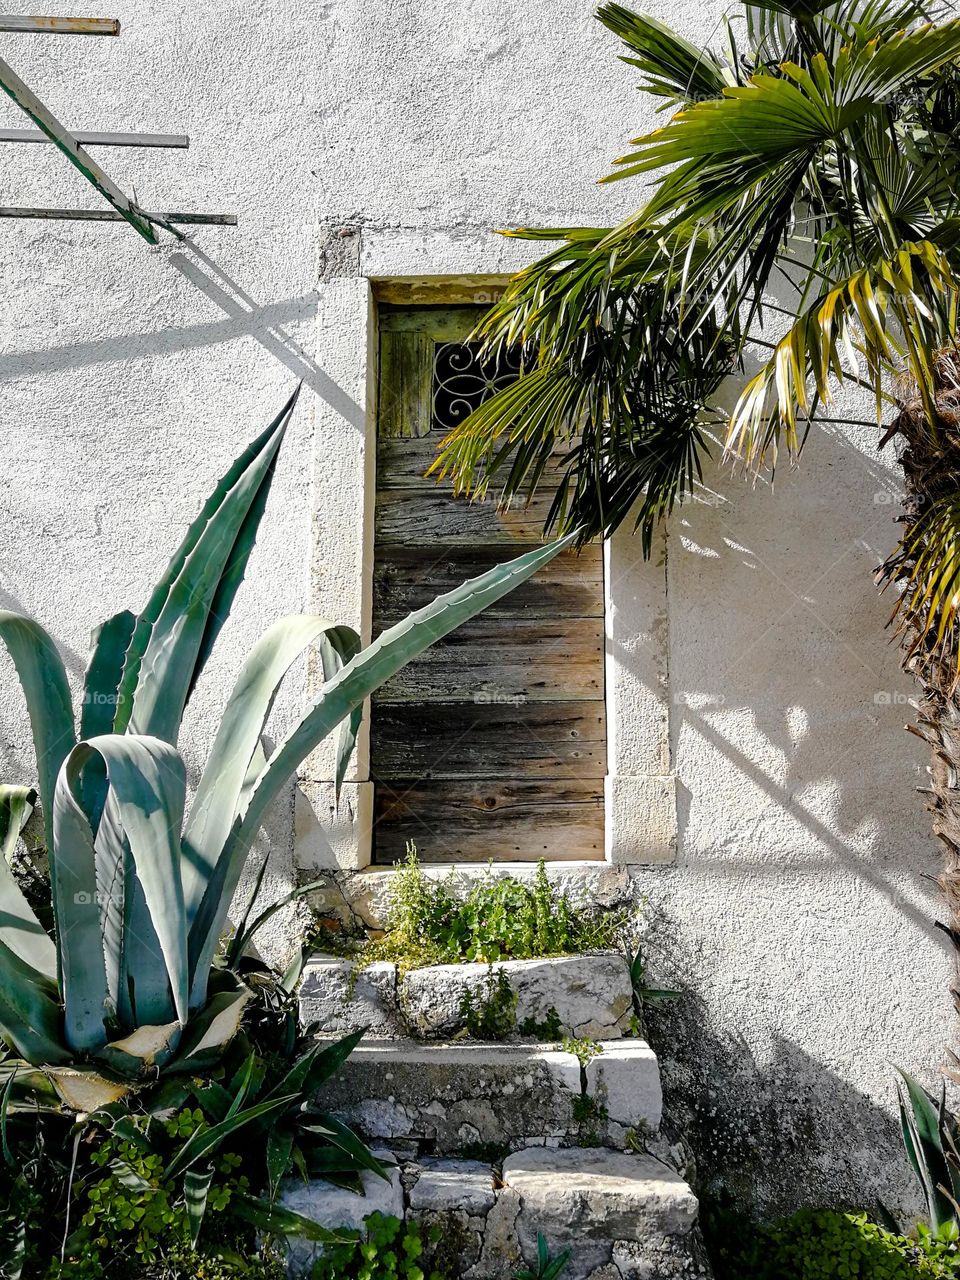 Mediterranean plants growing in front of wooden door of an old house